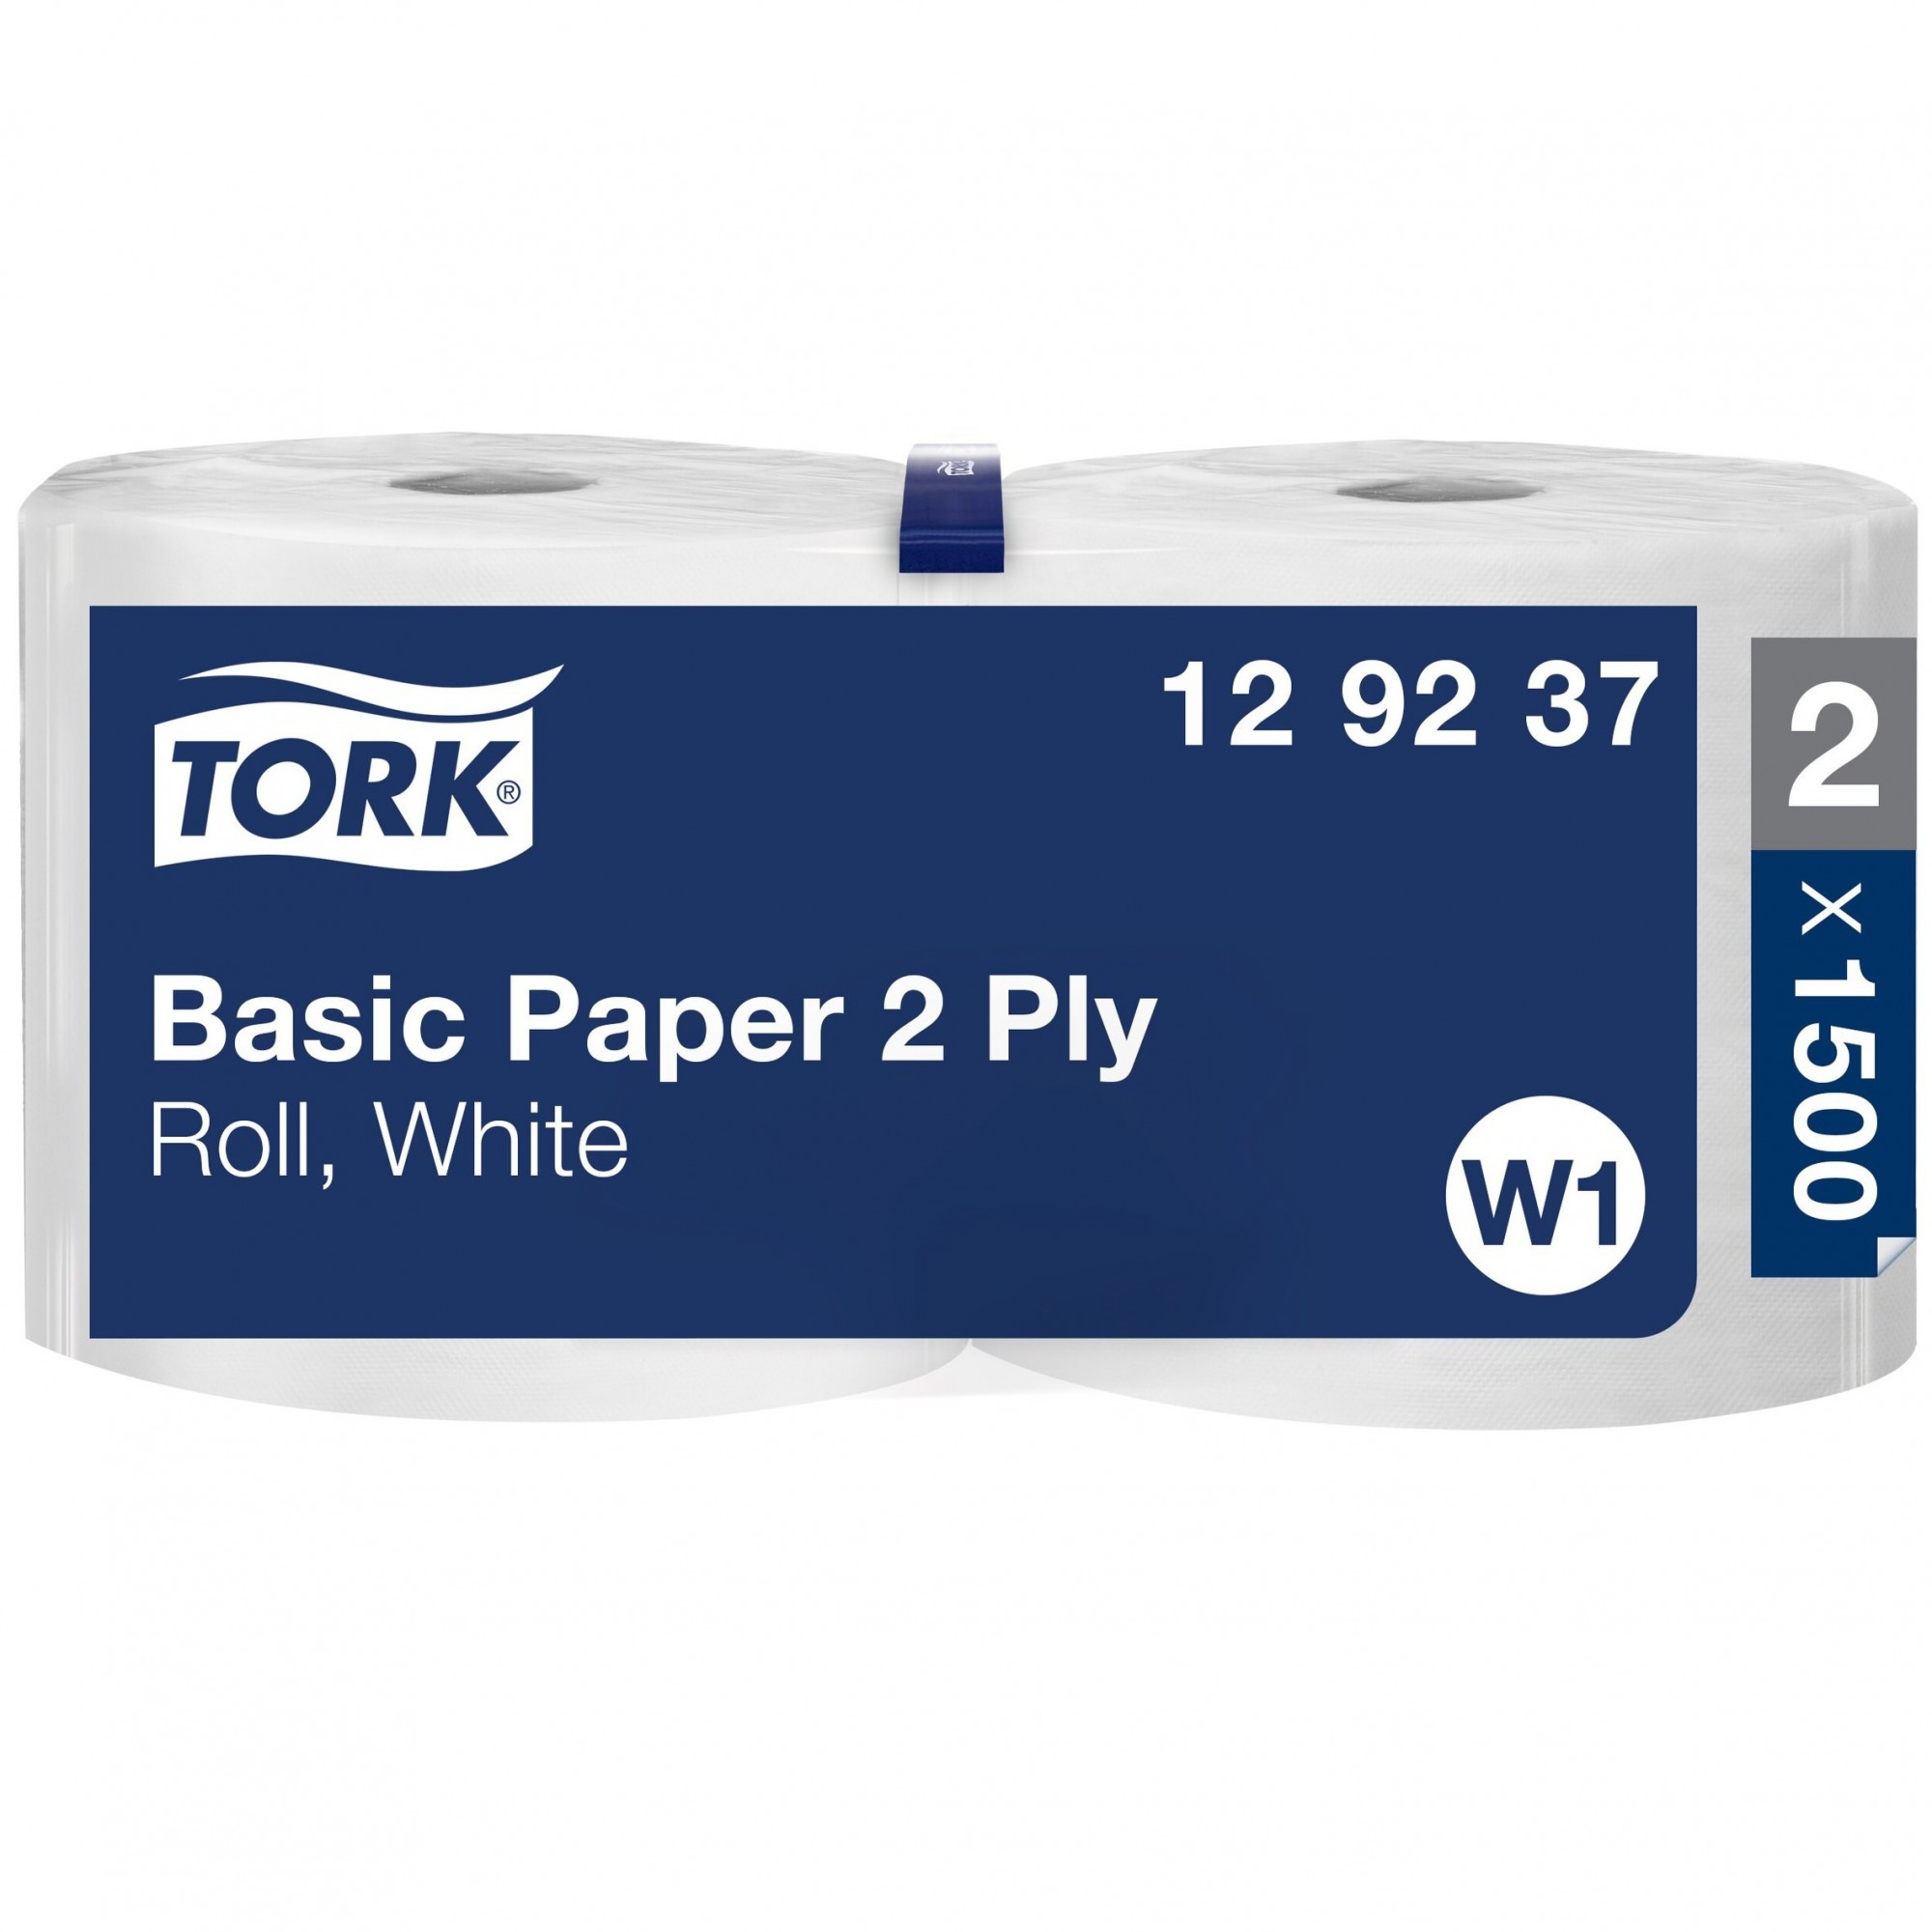 2 bobines de papier essuyage basic 1500F - Tork